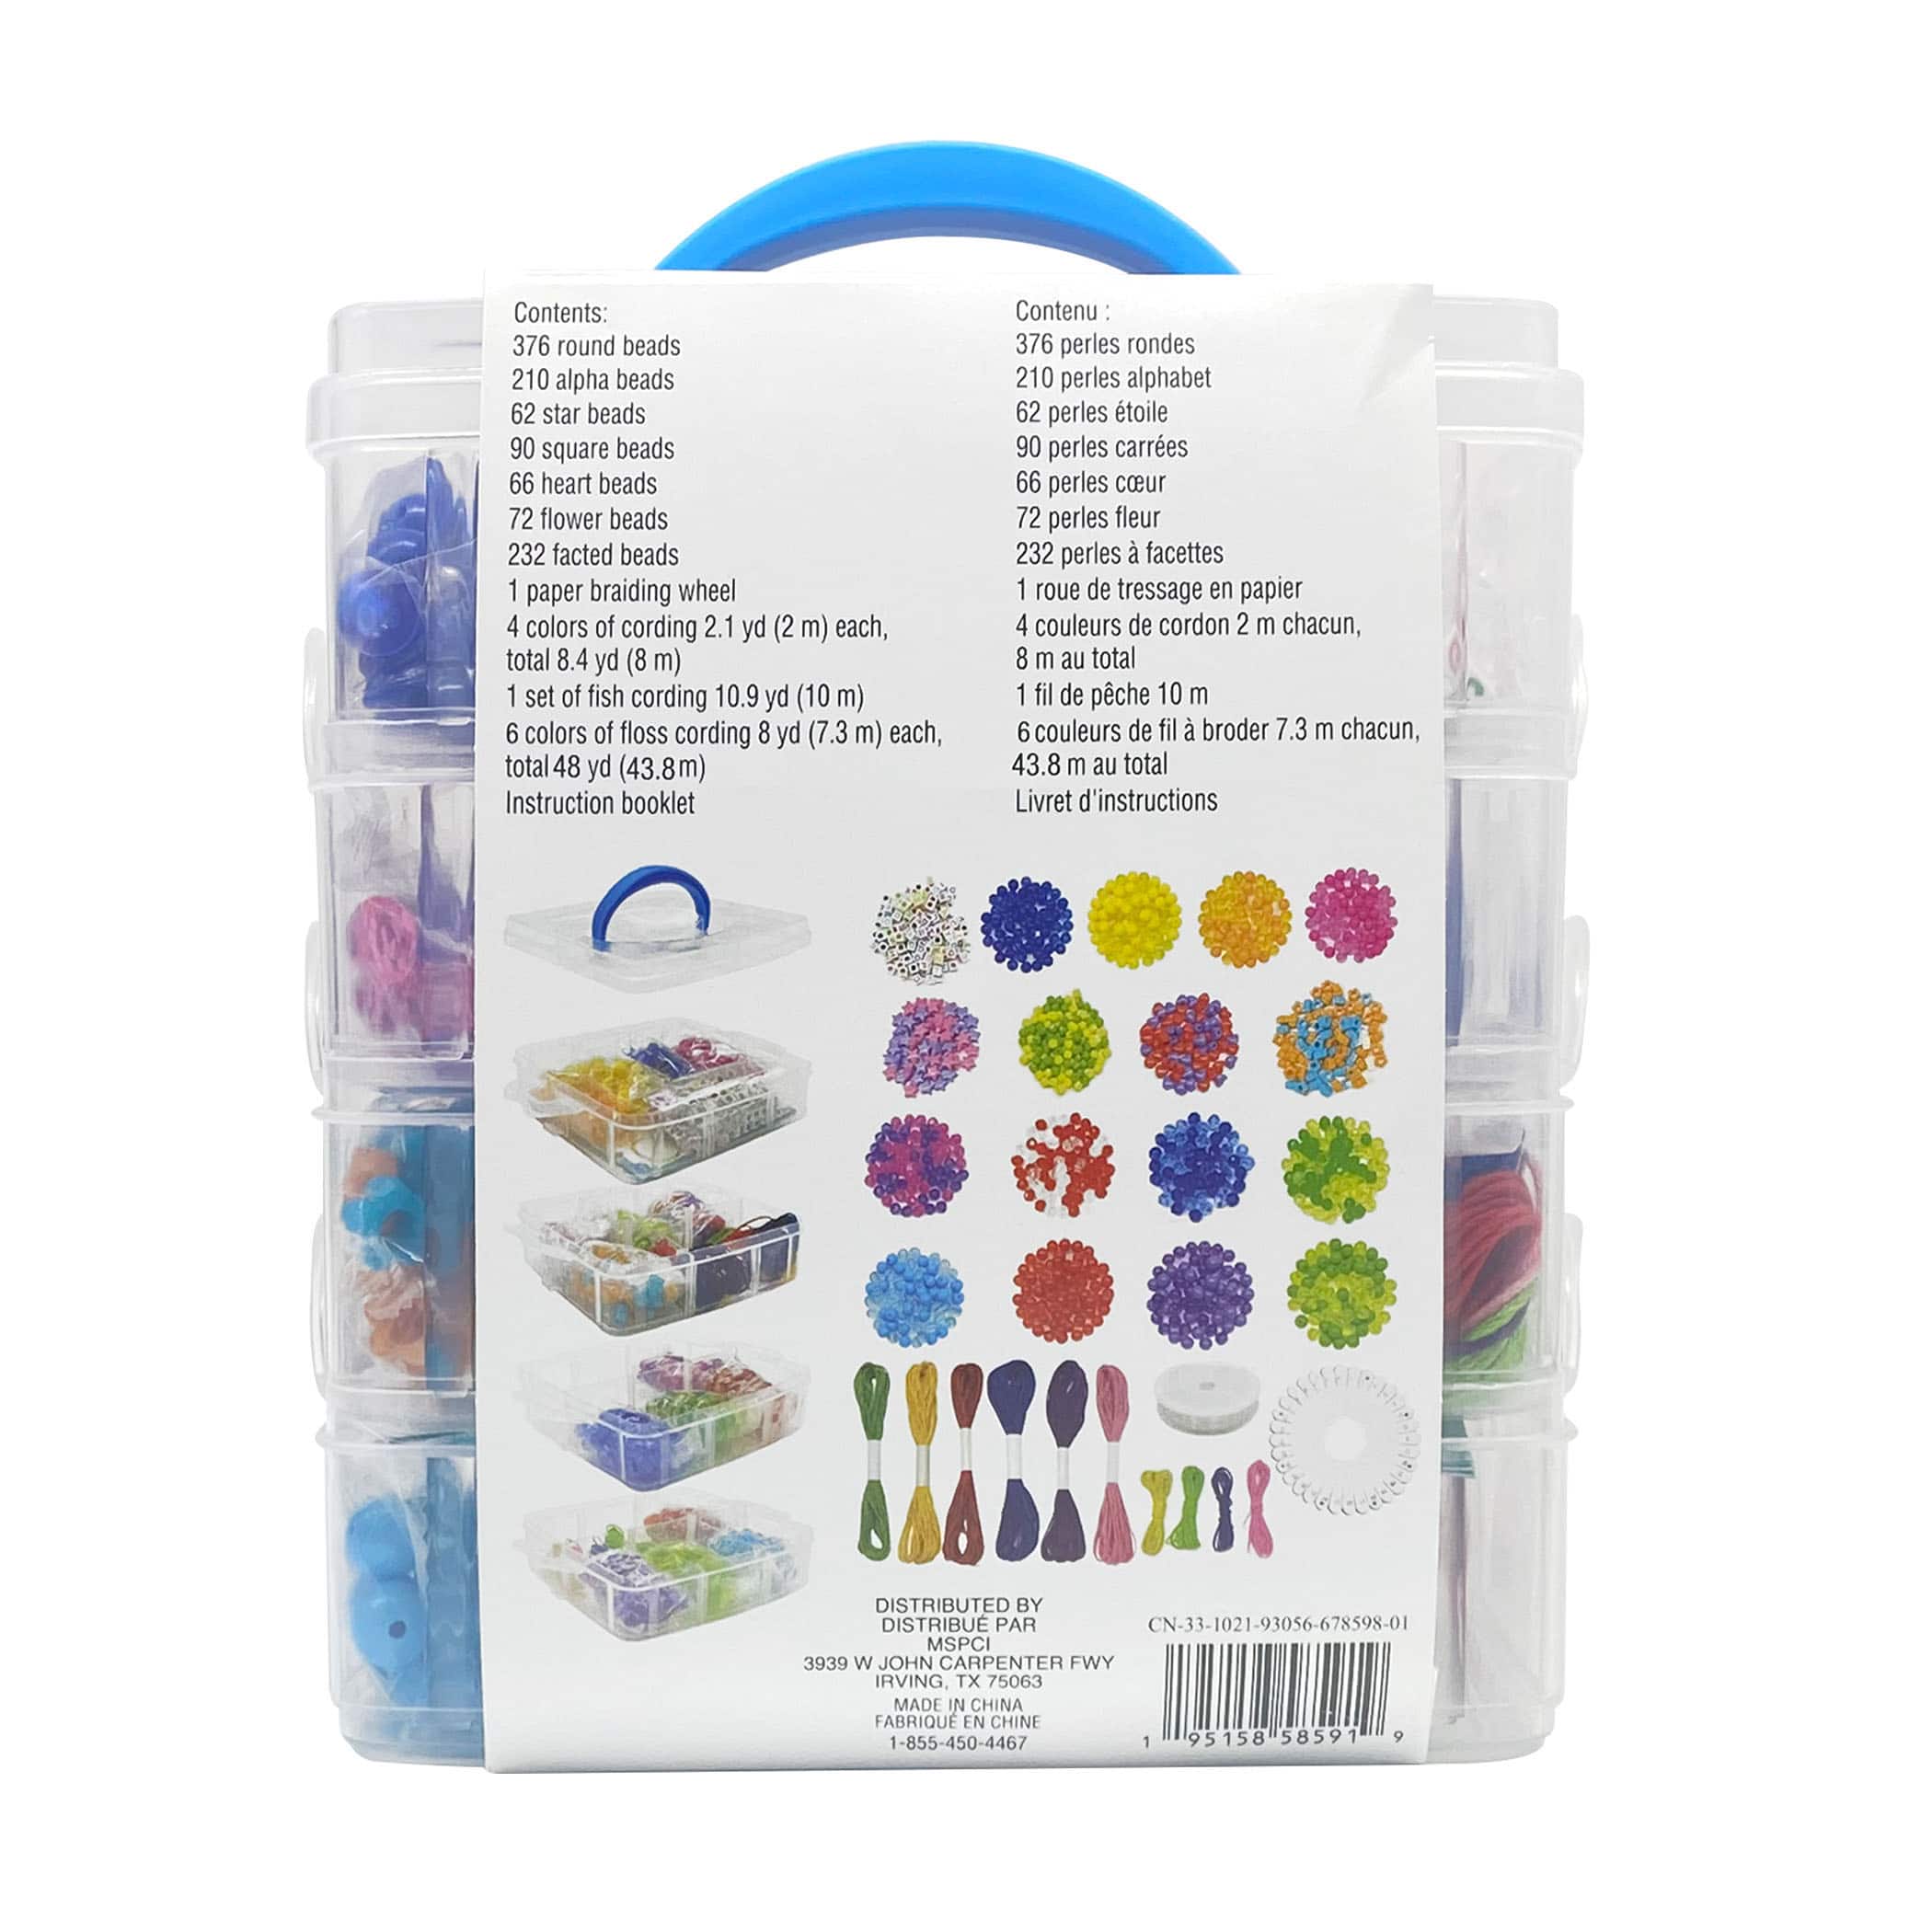 Rainbow Bead Kit Box by Creatology&#x2122;